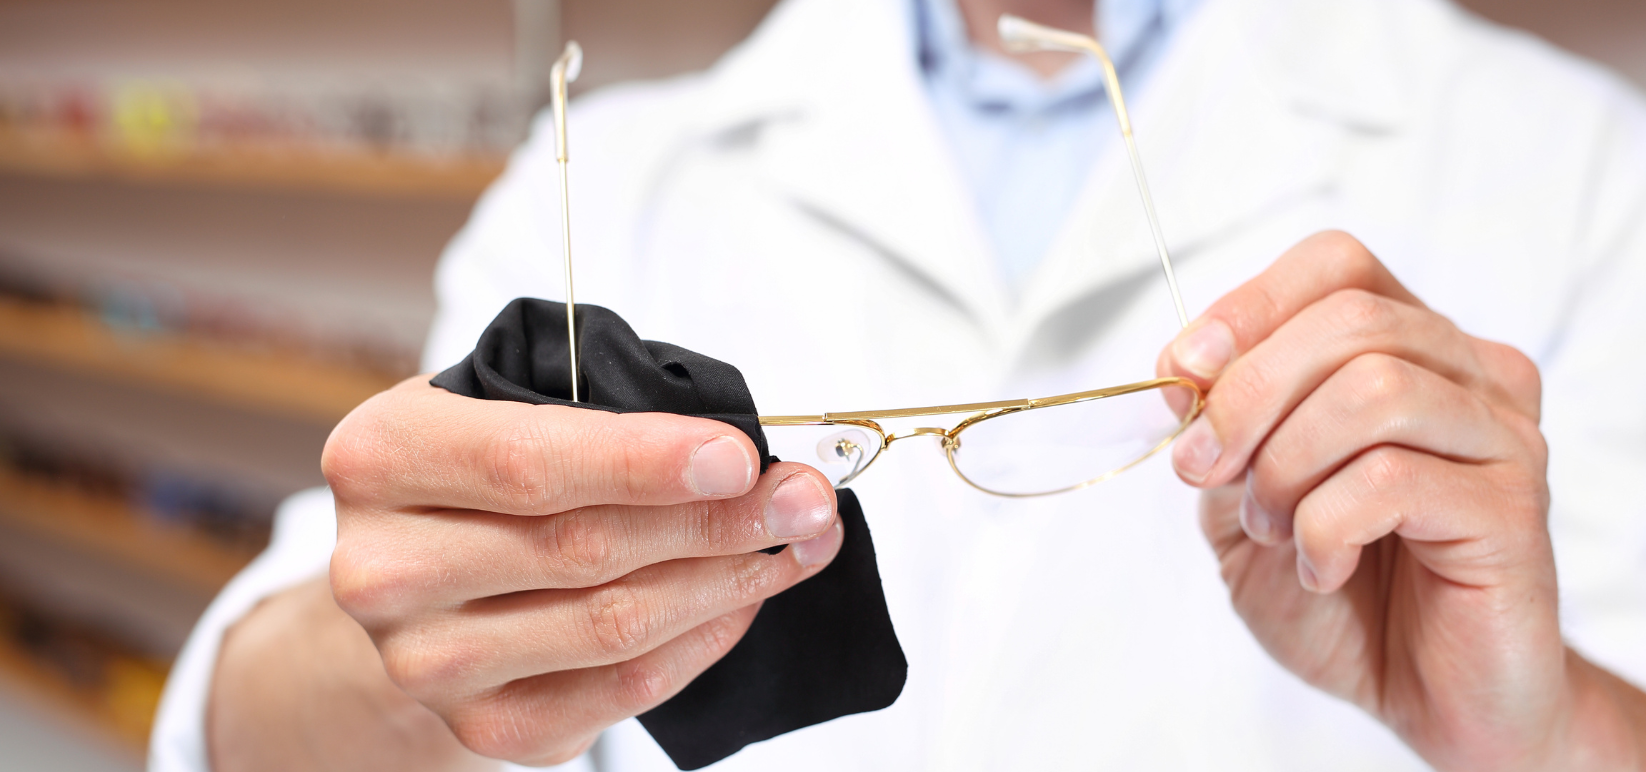 Optometrist uses cloth to wipe eyeglasses clean